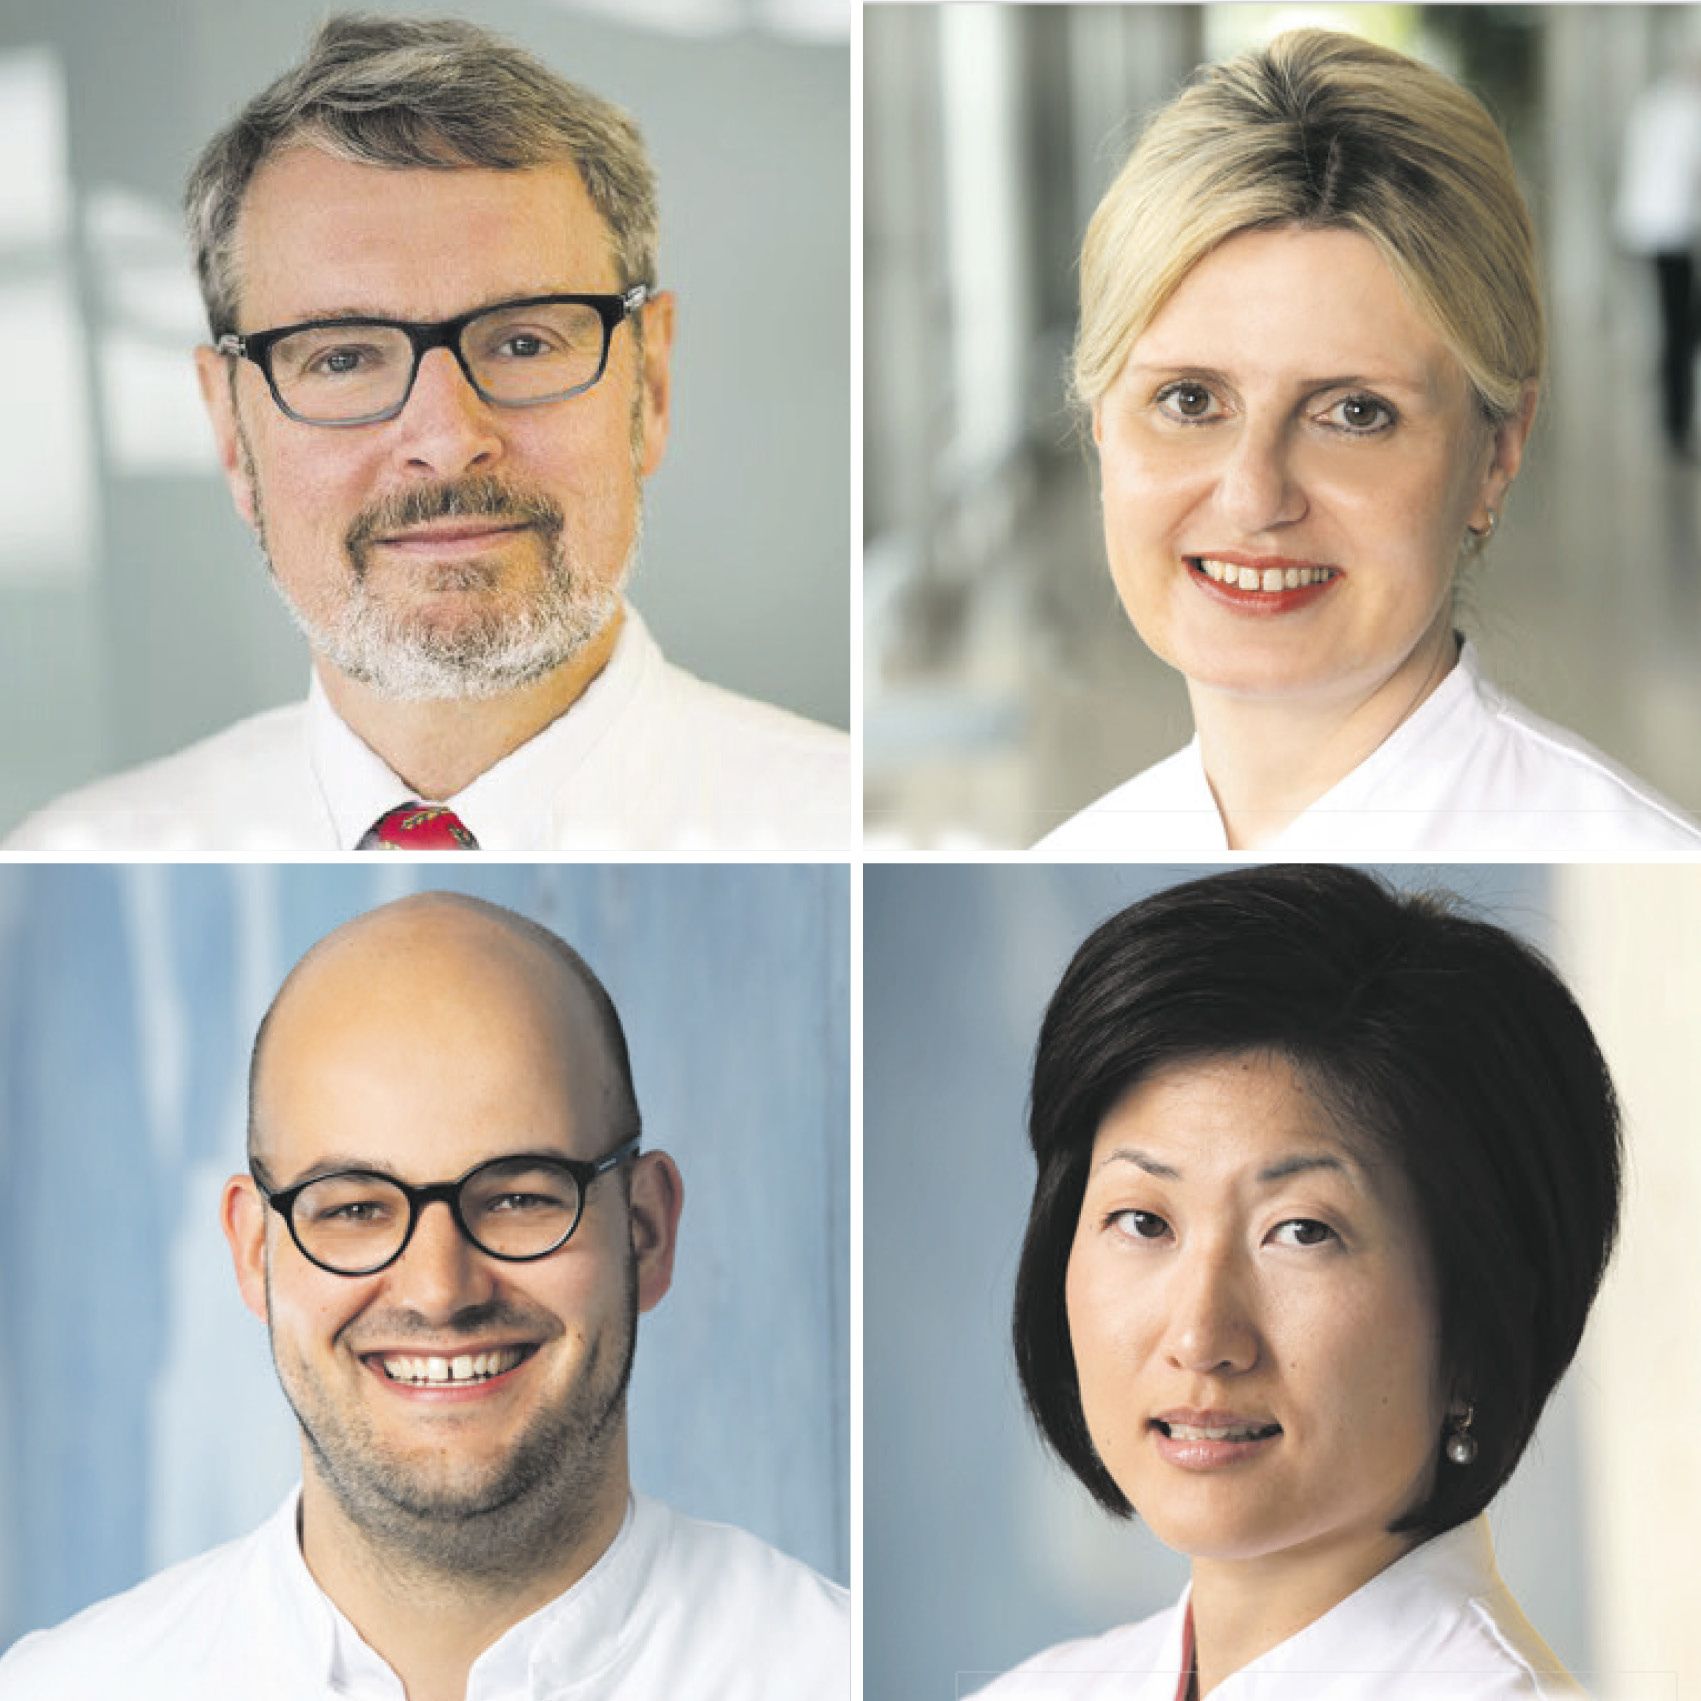 Prof. Dr. Michael Scheurlen, Privatdozentin Dr. Katica Krajinovic, Dr. Sven Flemming und Privatdozentin Dr. Mia Kim (von links oben nach rechts unten) sind die Referent/innen der Abendsprechstunde zu chronisch entzündlichen Darmerkrankungen am 13. Februar 2019.